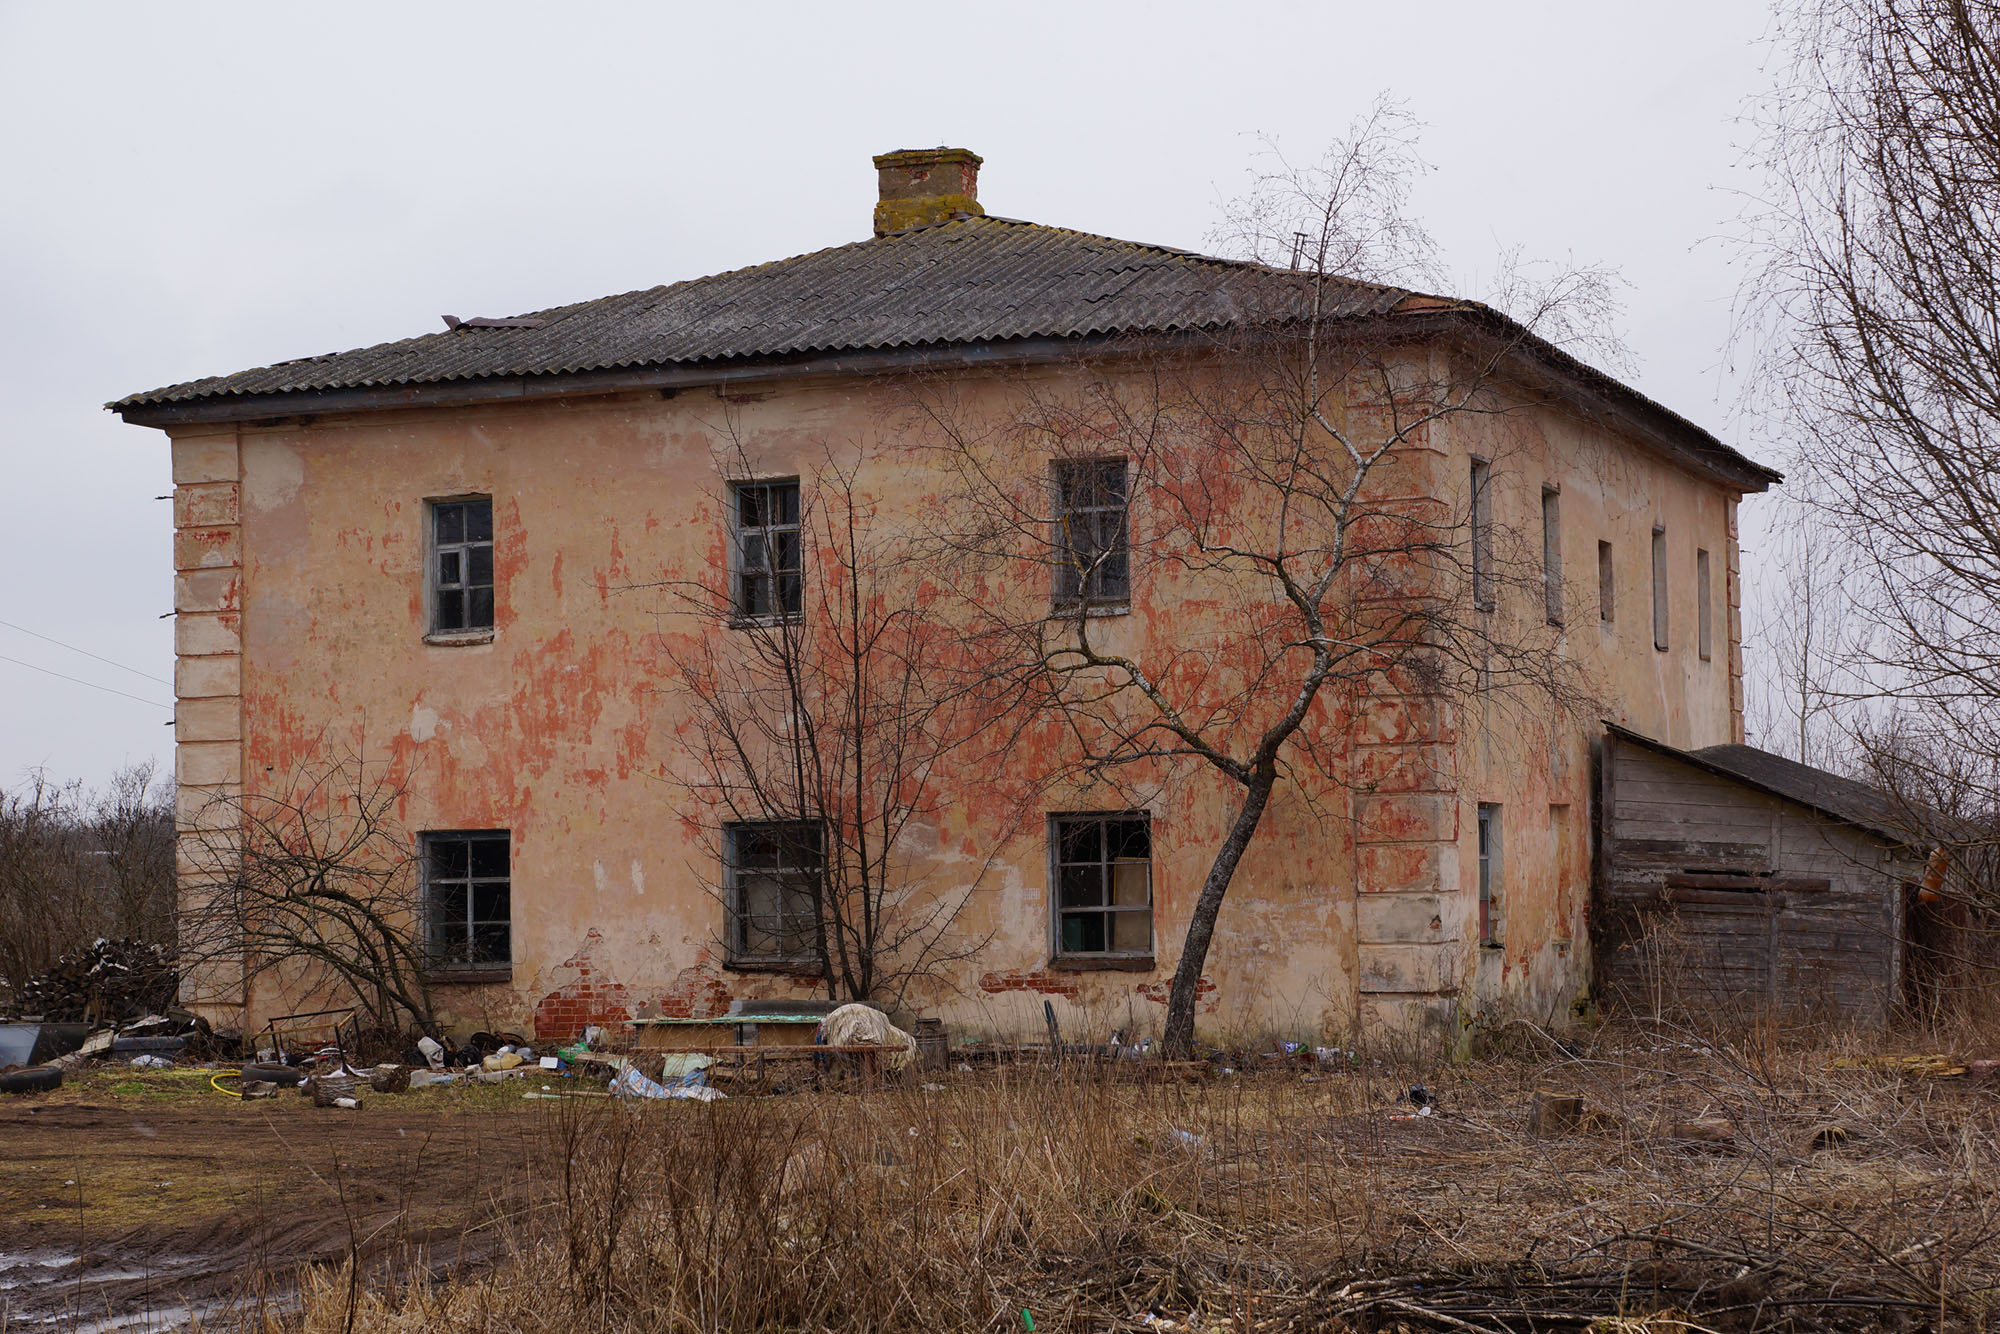 Михайлов Погост, Локнянский район, Псковская область. Здание бывшей пересыльной тюрьмы.